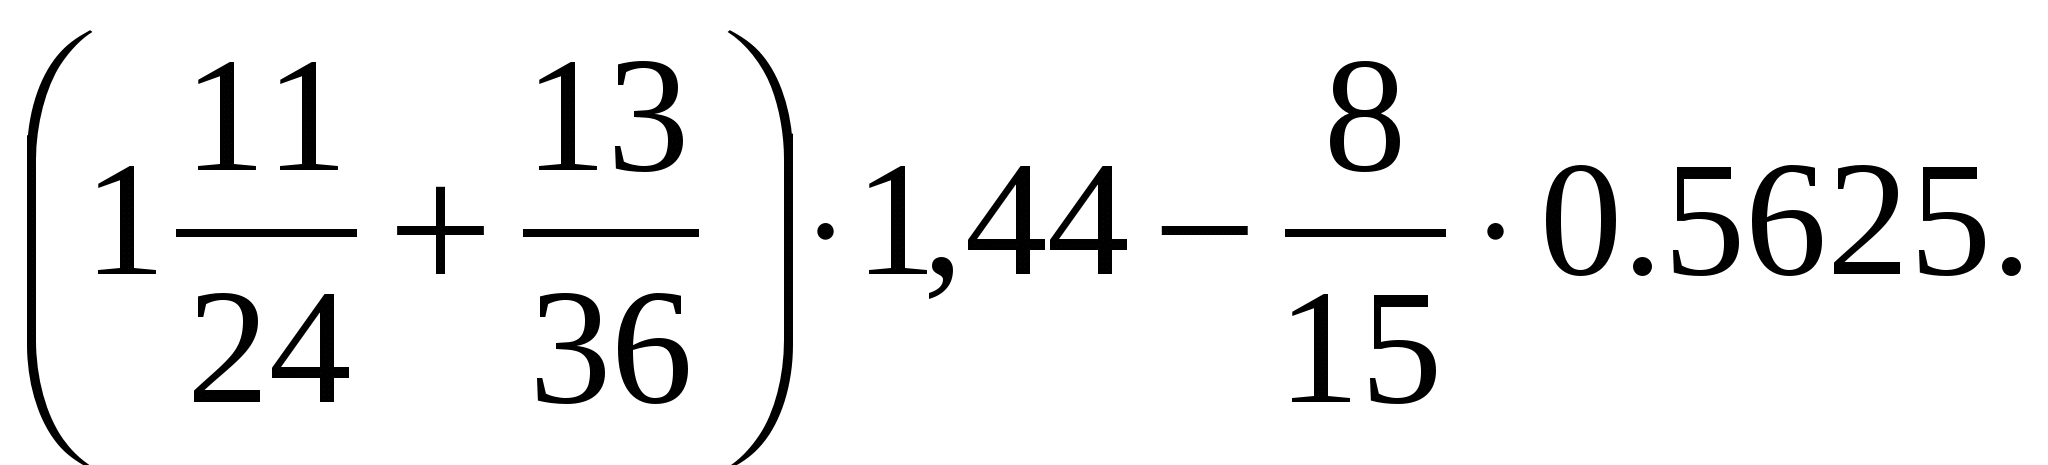 1 36 10 7. (1 11/24+13/36) Х1,44-8/15 х0,5625. 1 11/24+13/36 1.44-8/15 0.5625 Решение. (1 11/24 + 13/36) Х 1,44 - 8/15 Х 0,5625 = 2,32.. Математика 6 класс (1 11/24 +13/36)*1,44-8/15*0,5625.